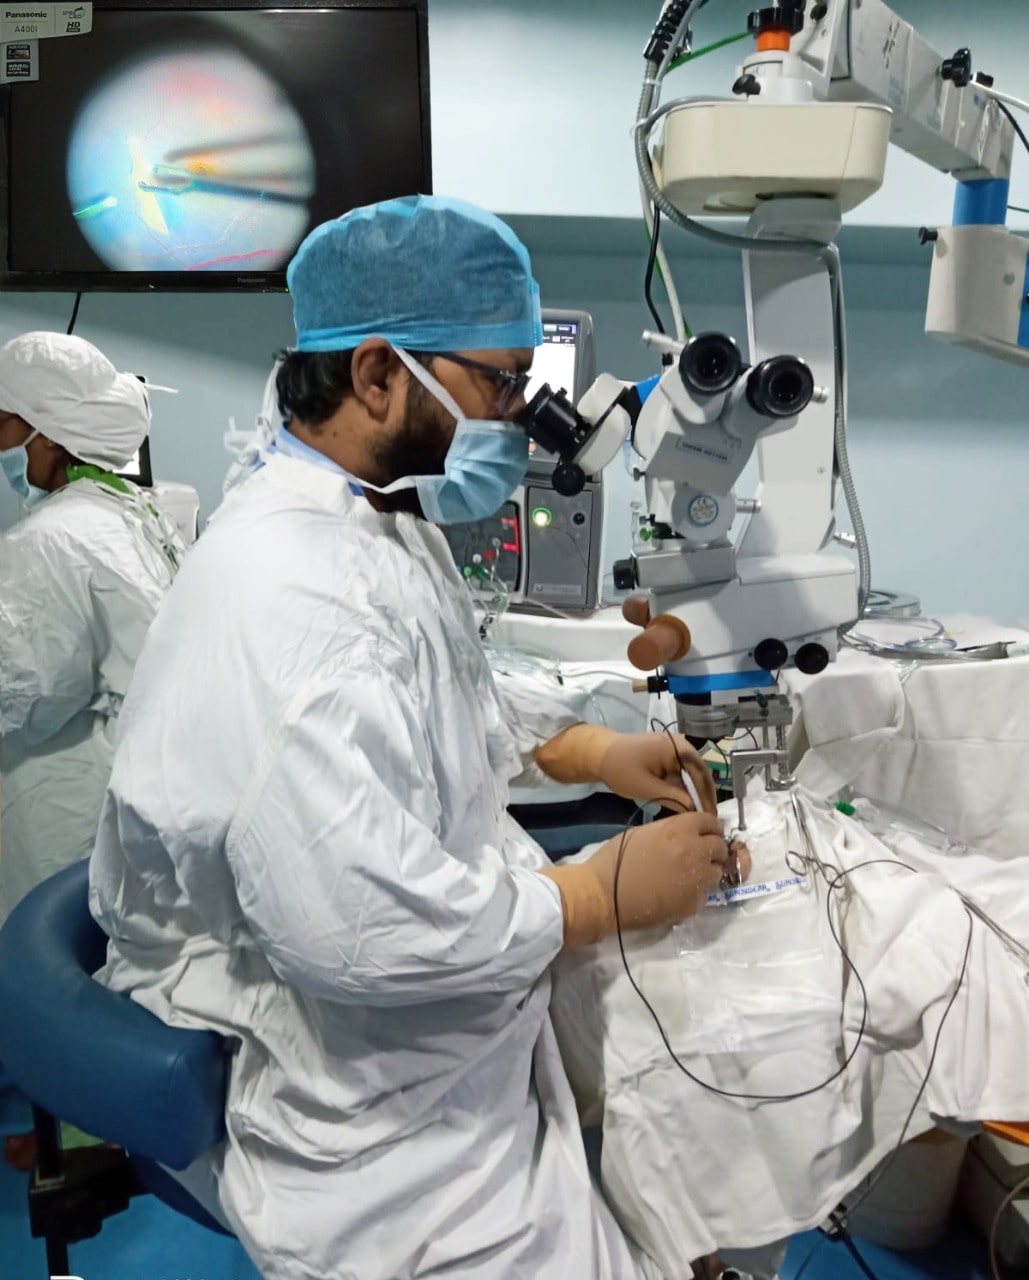 झारखंड में कश्यप मेमोरियल आई हॉस्पिटल पूर्वी भारत का पहला  रेटिना सर्जरी का प्रशिक्षण संस्थान बना